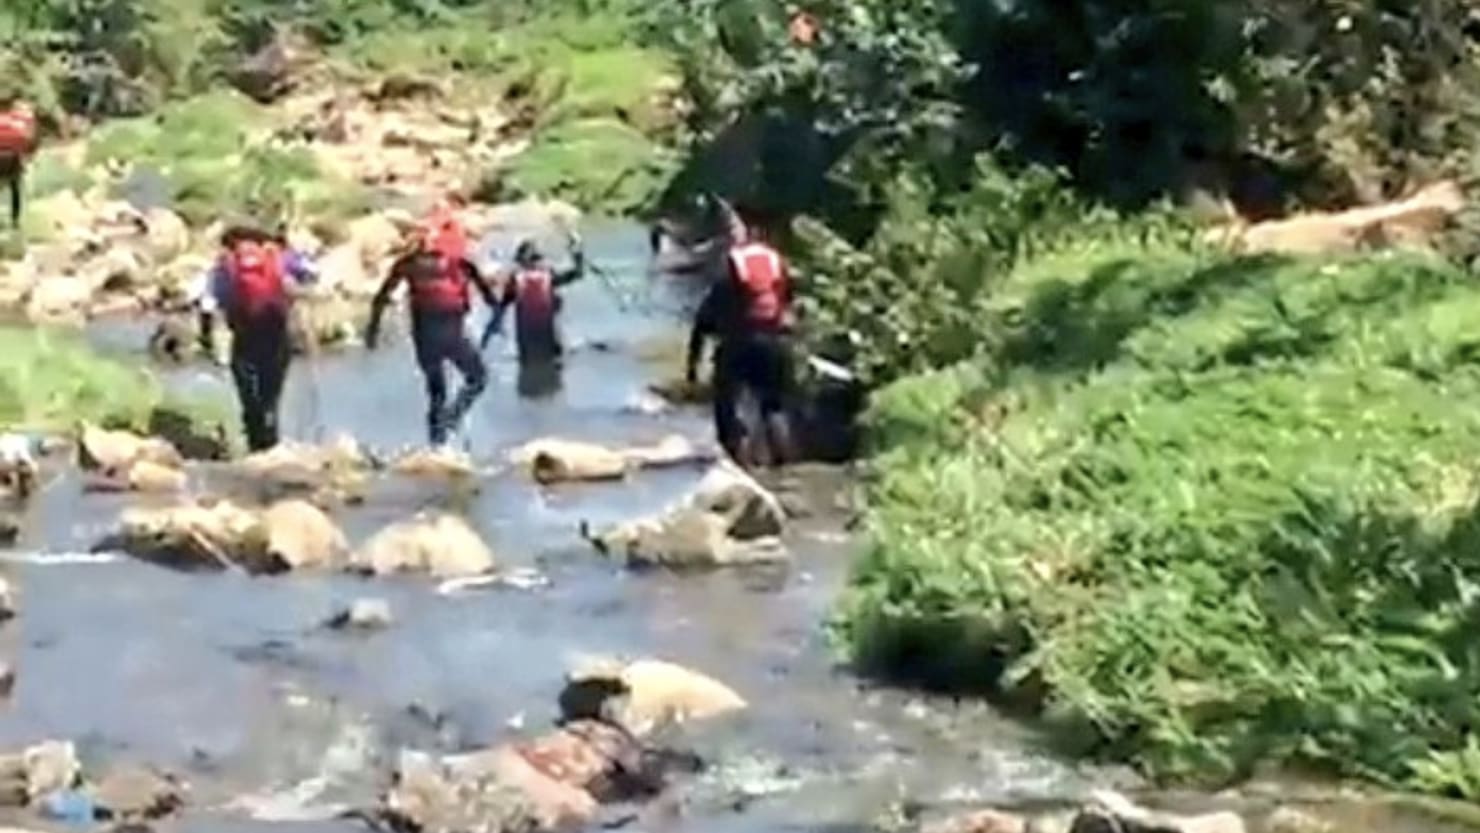 Una ceremonia de bautismo en el río acaba en tragedia tras una inundación repentina que mata a 14 personas